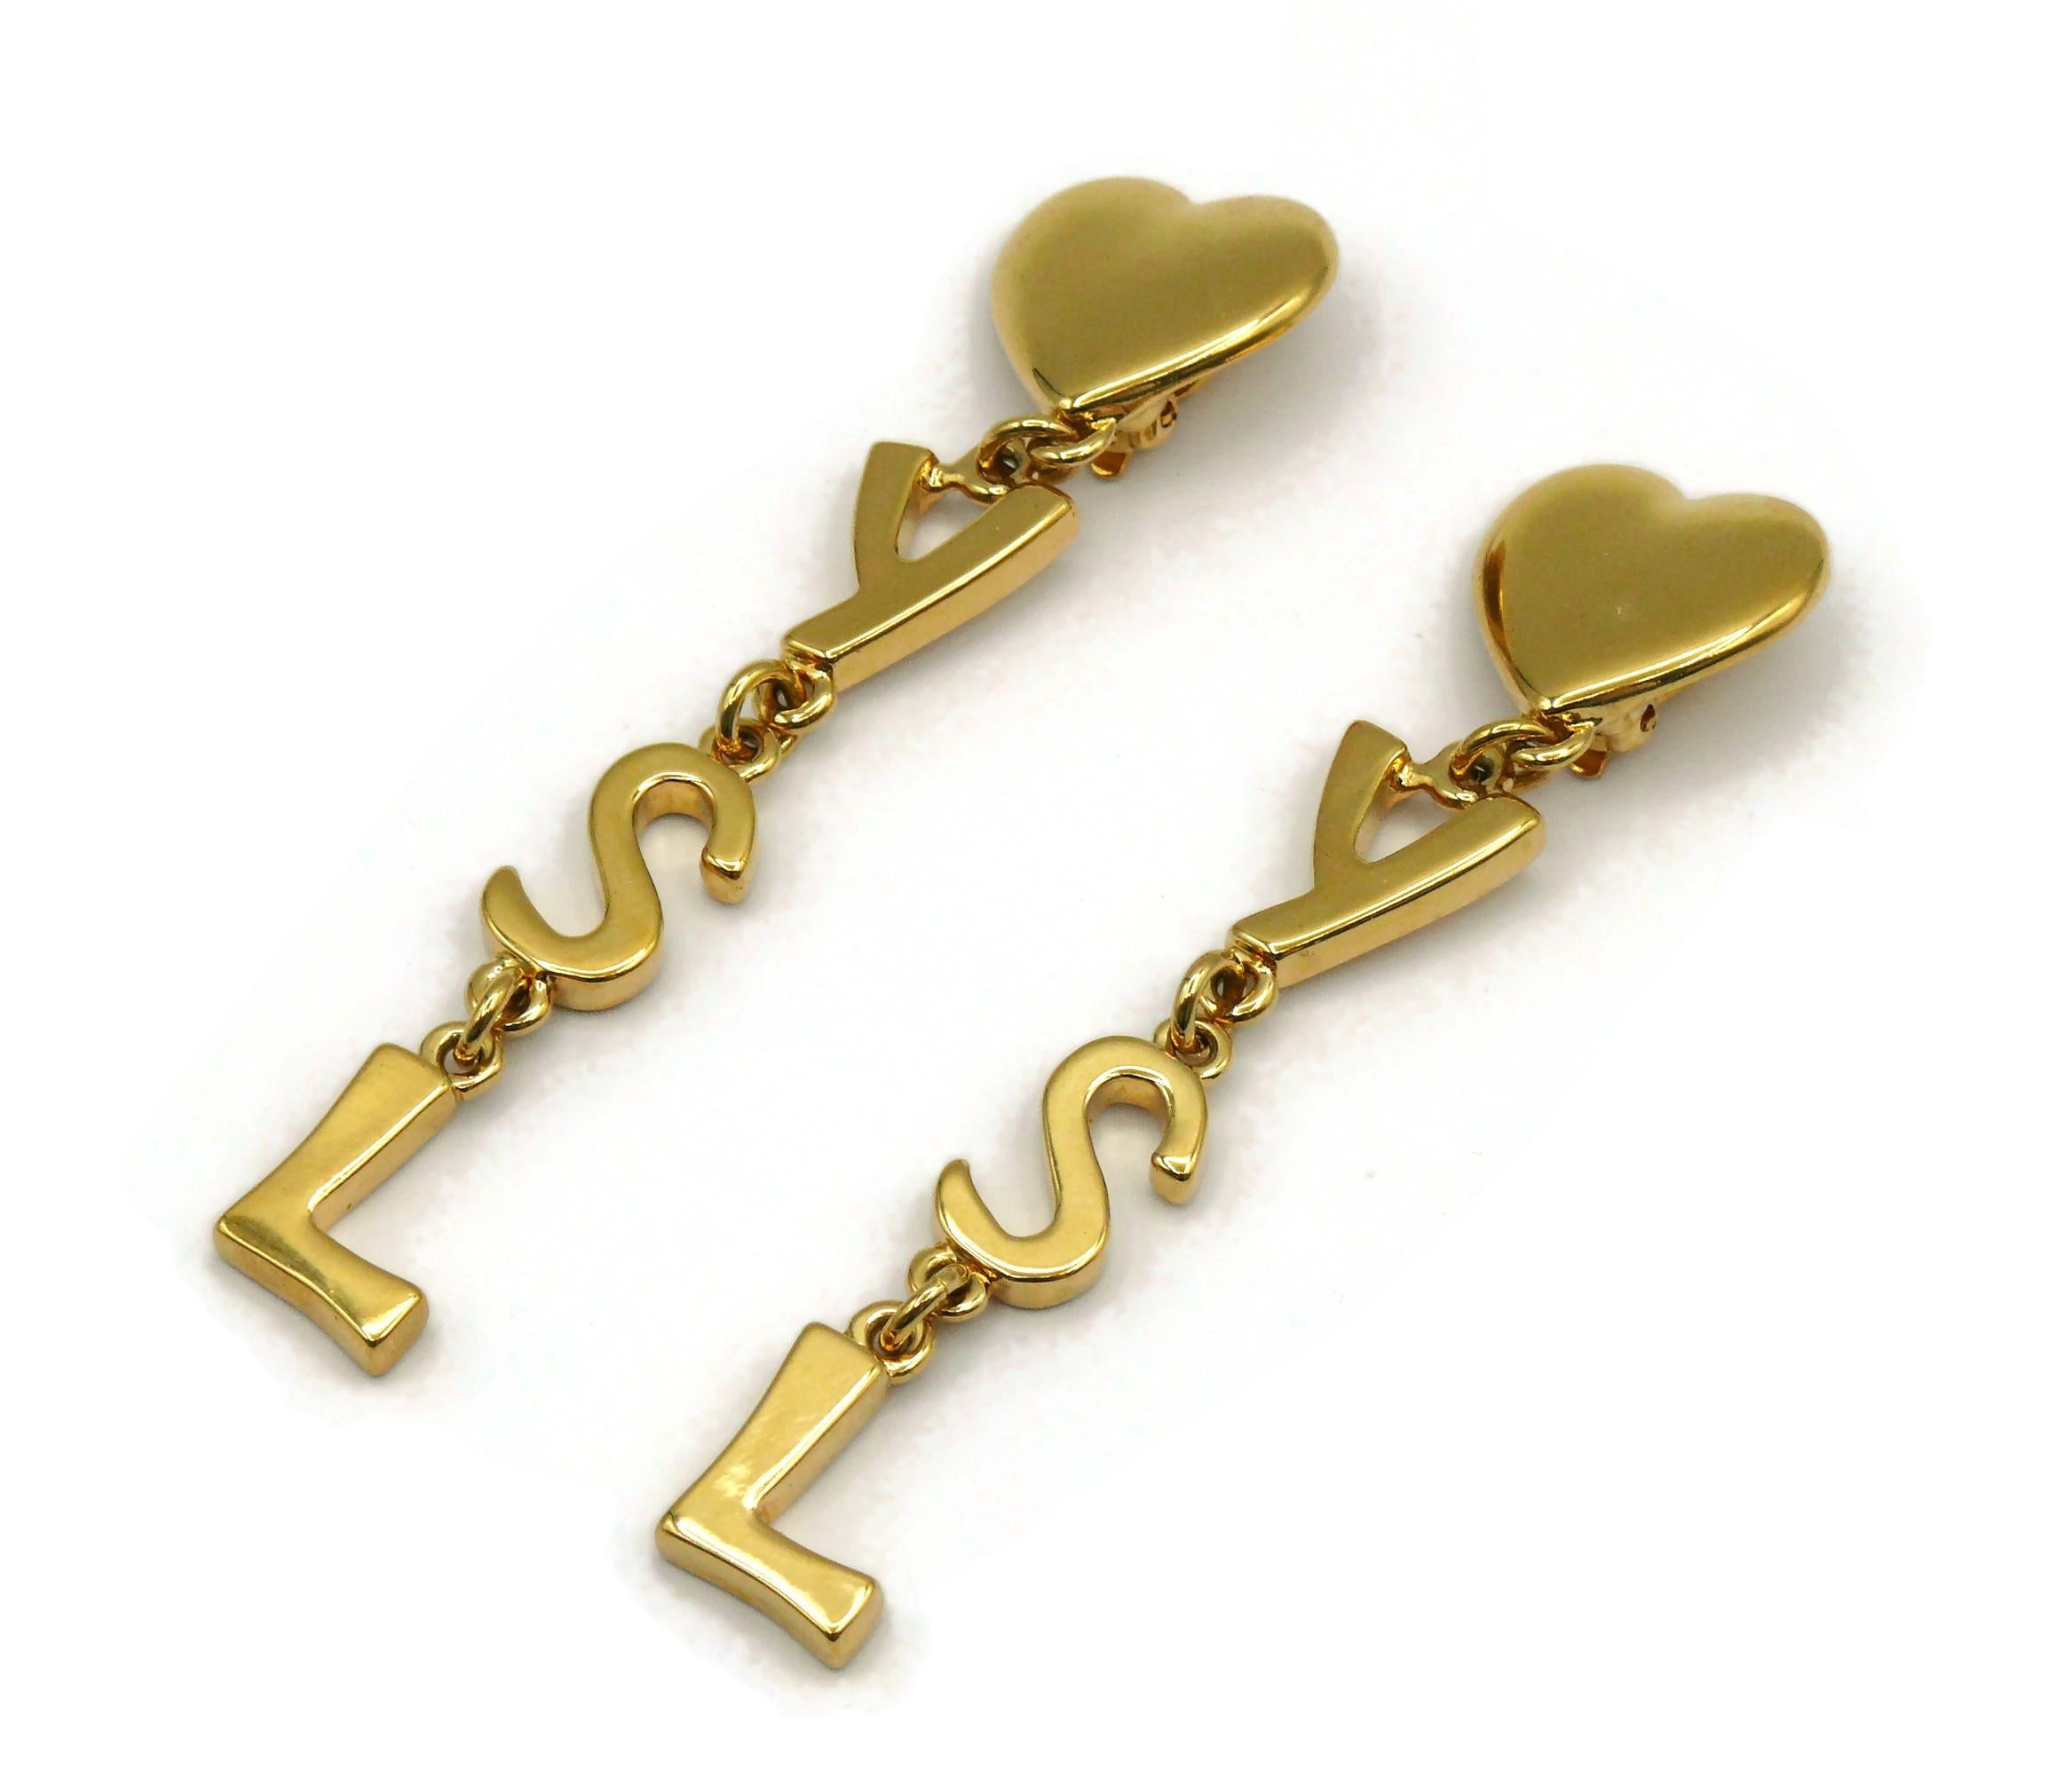 ysl gold earrings